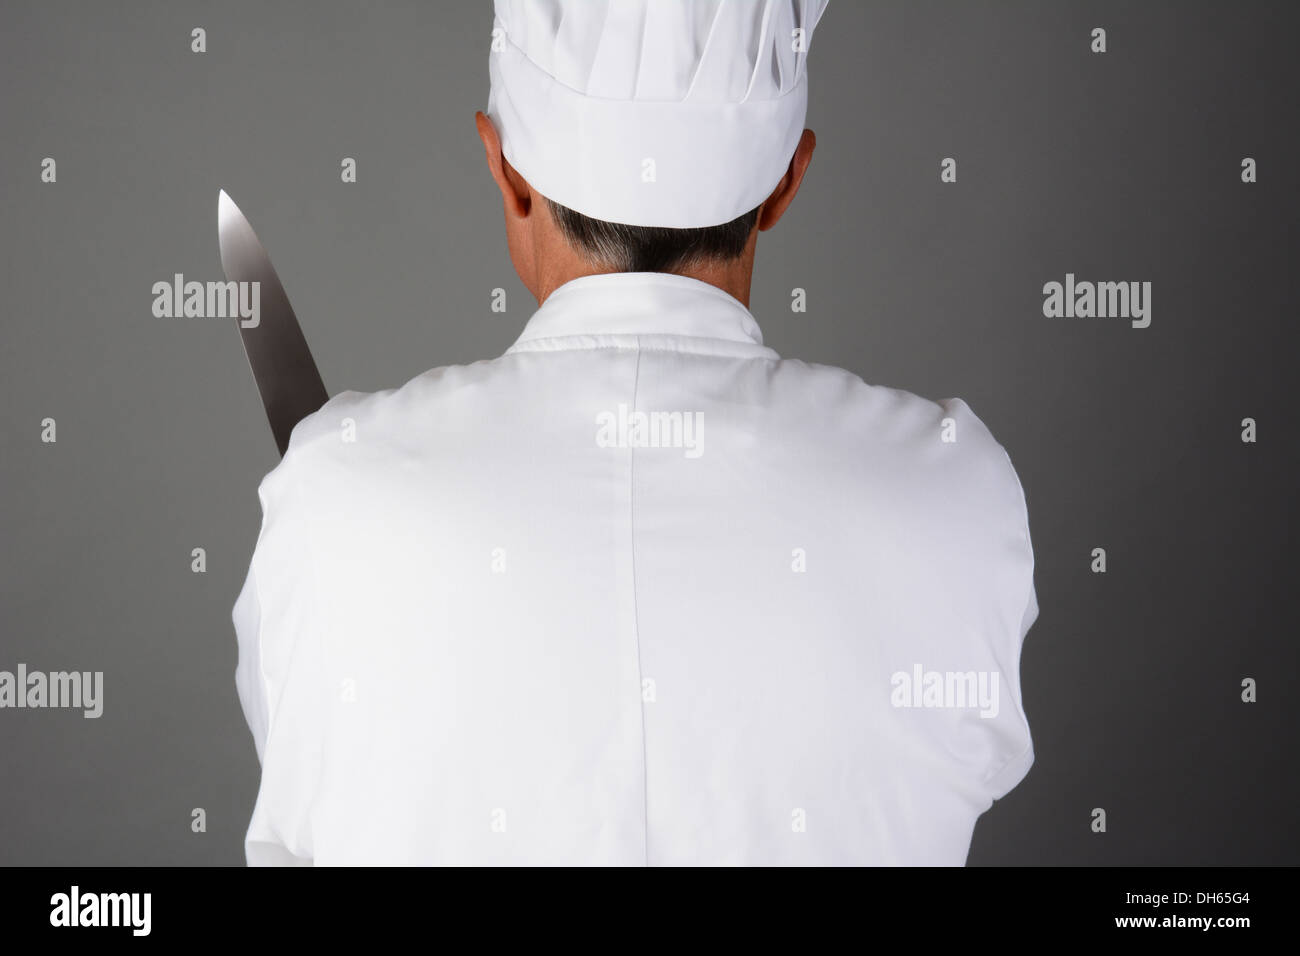 Nahaufnahme eines Kochs mit einem Messer. Mann von hinten gesehen und ist nicht wiederzuerkennen. Stockfoto